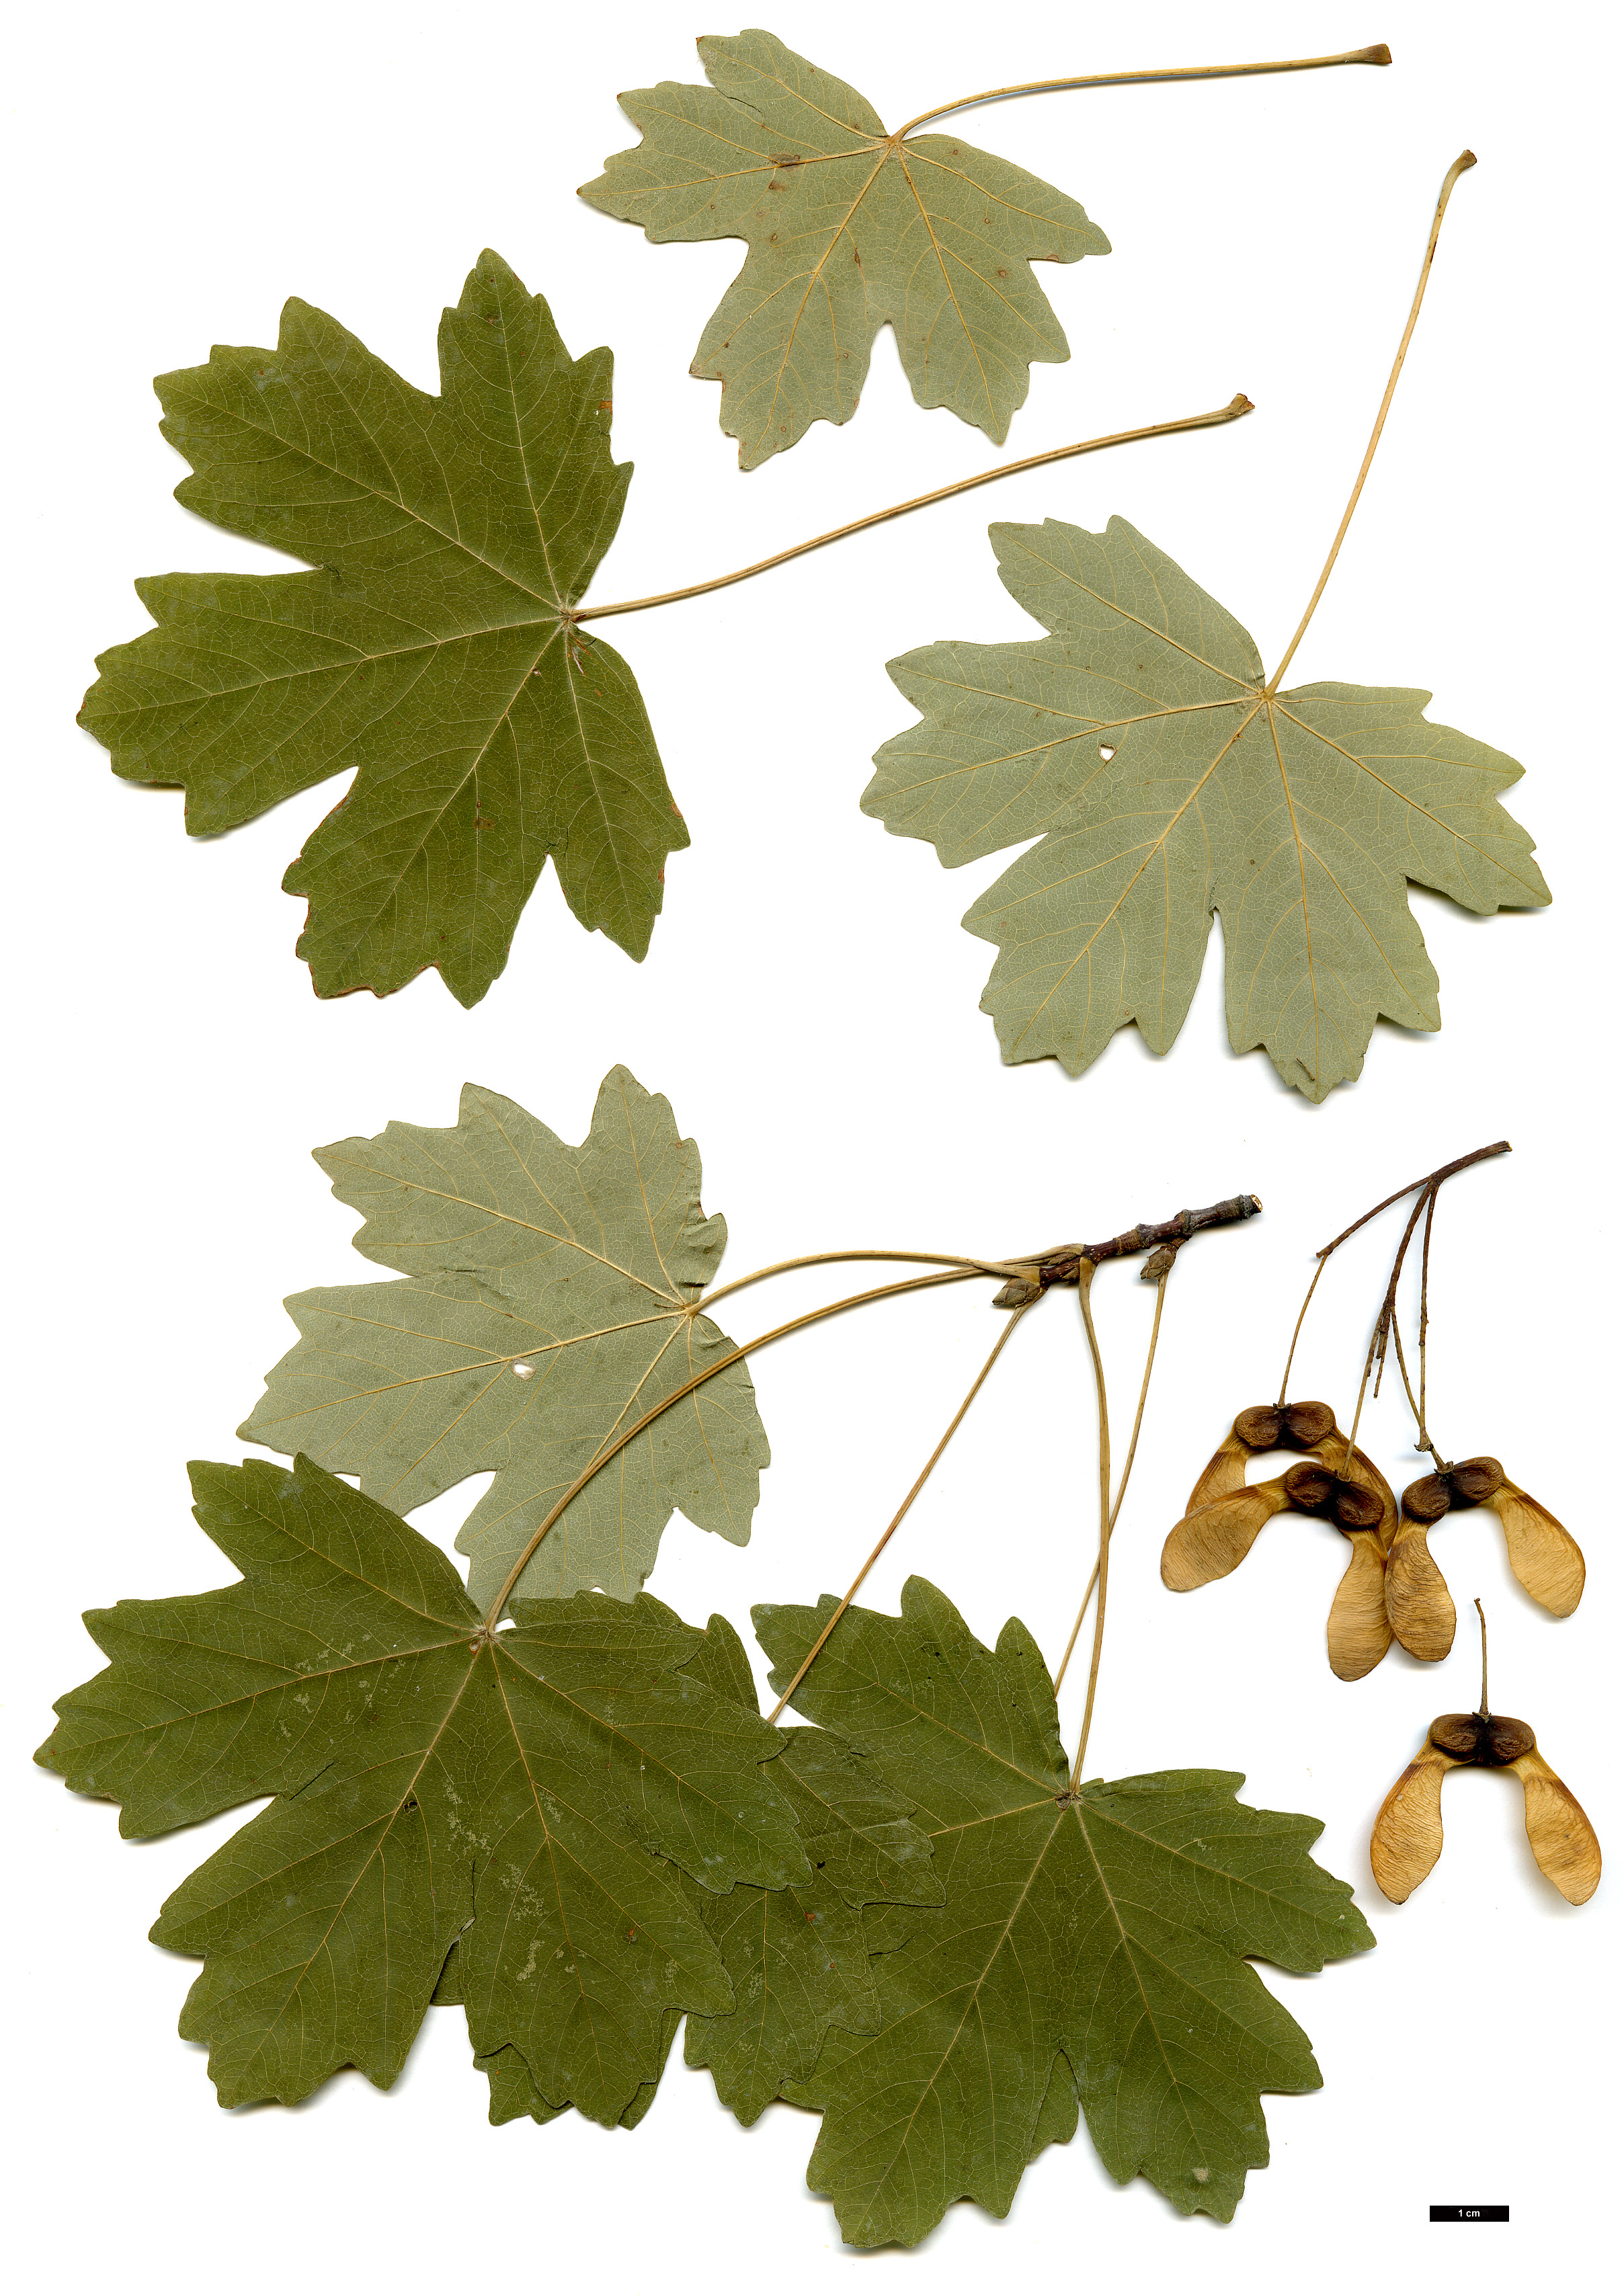 High resolution image: Family: Sapindaceae - Genus: Acer - Taxon: hyrcanum - SpeciesSub: subsp. hyrcanum